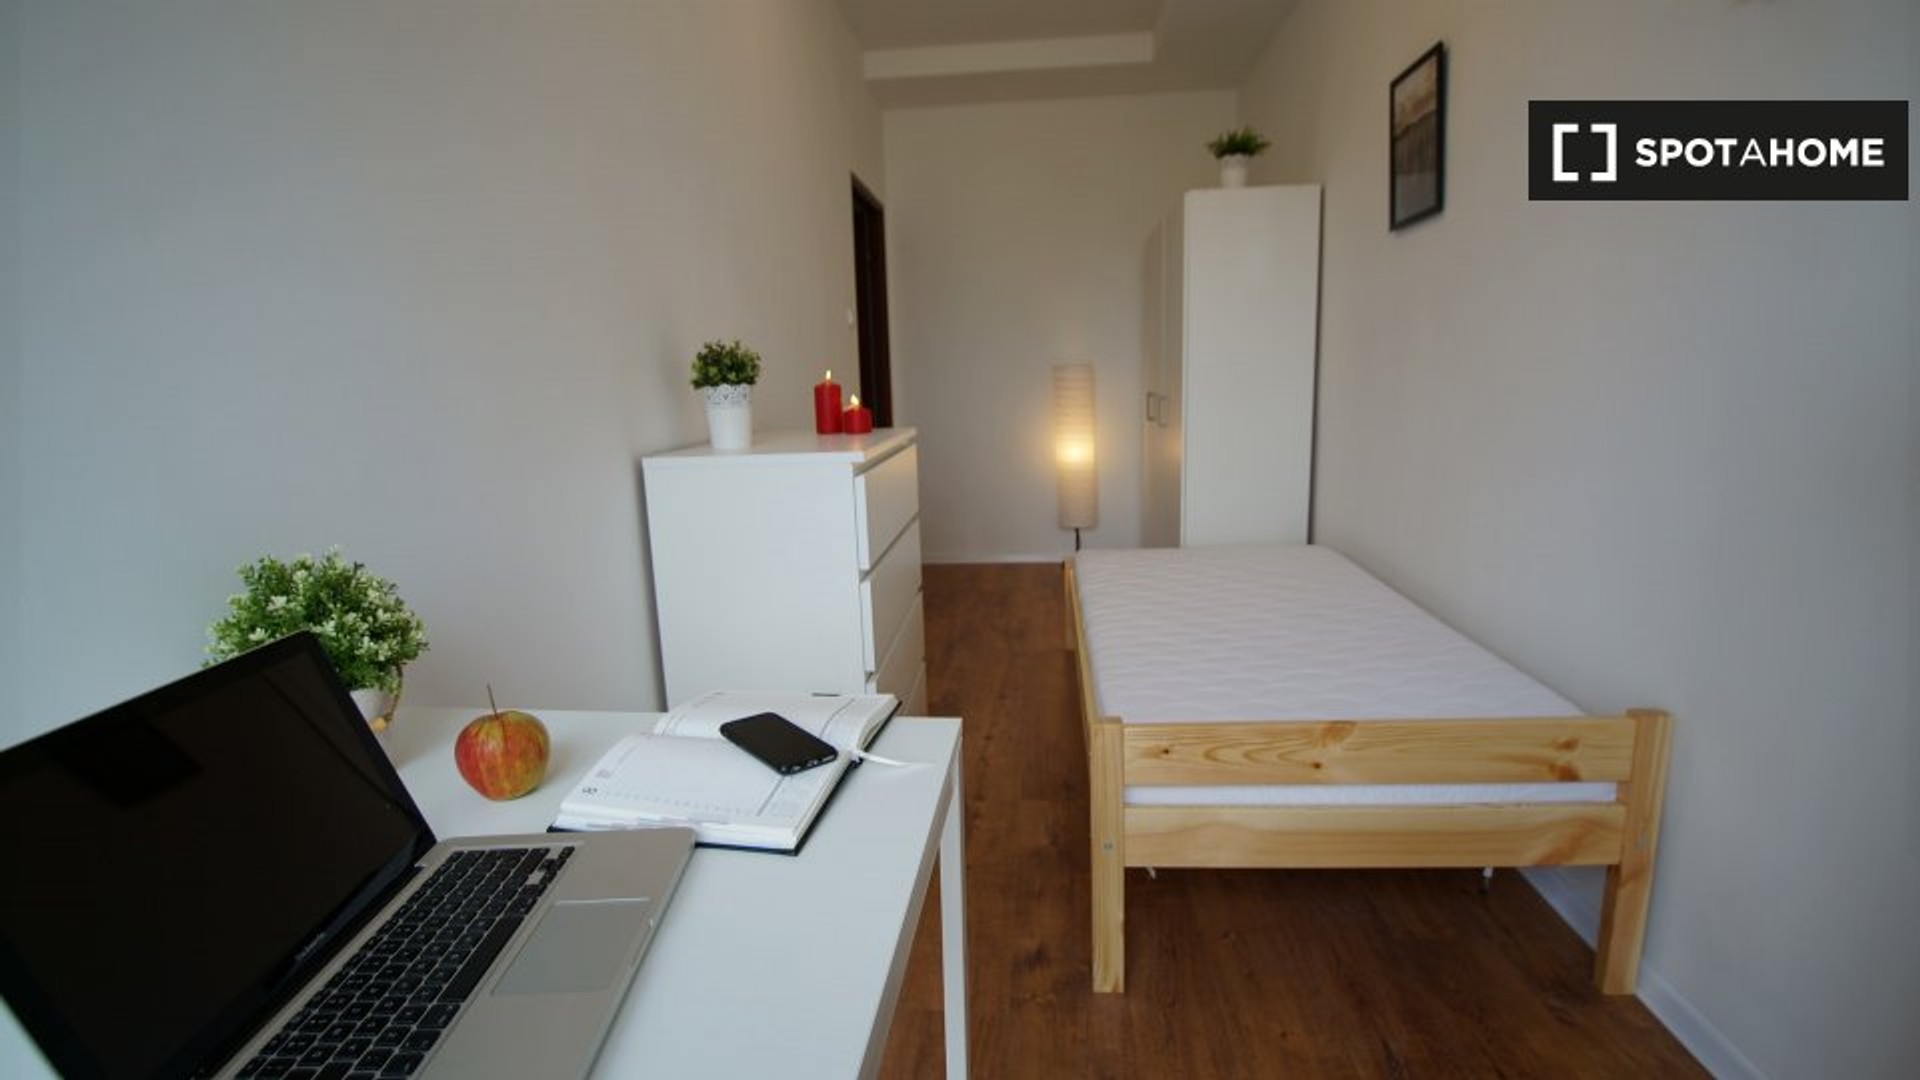 Pokój do wynajęcia z podwójnym łóżkiem w Łódź